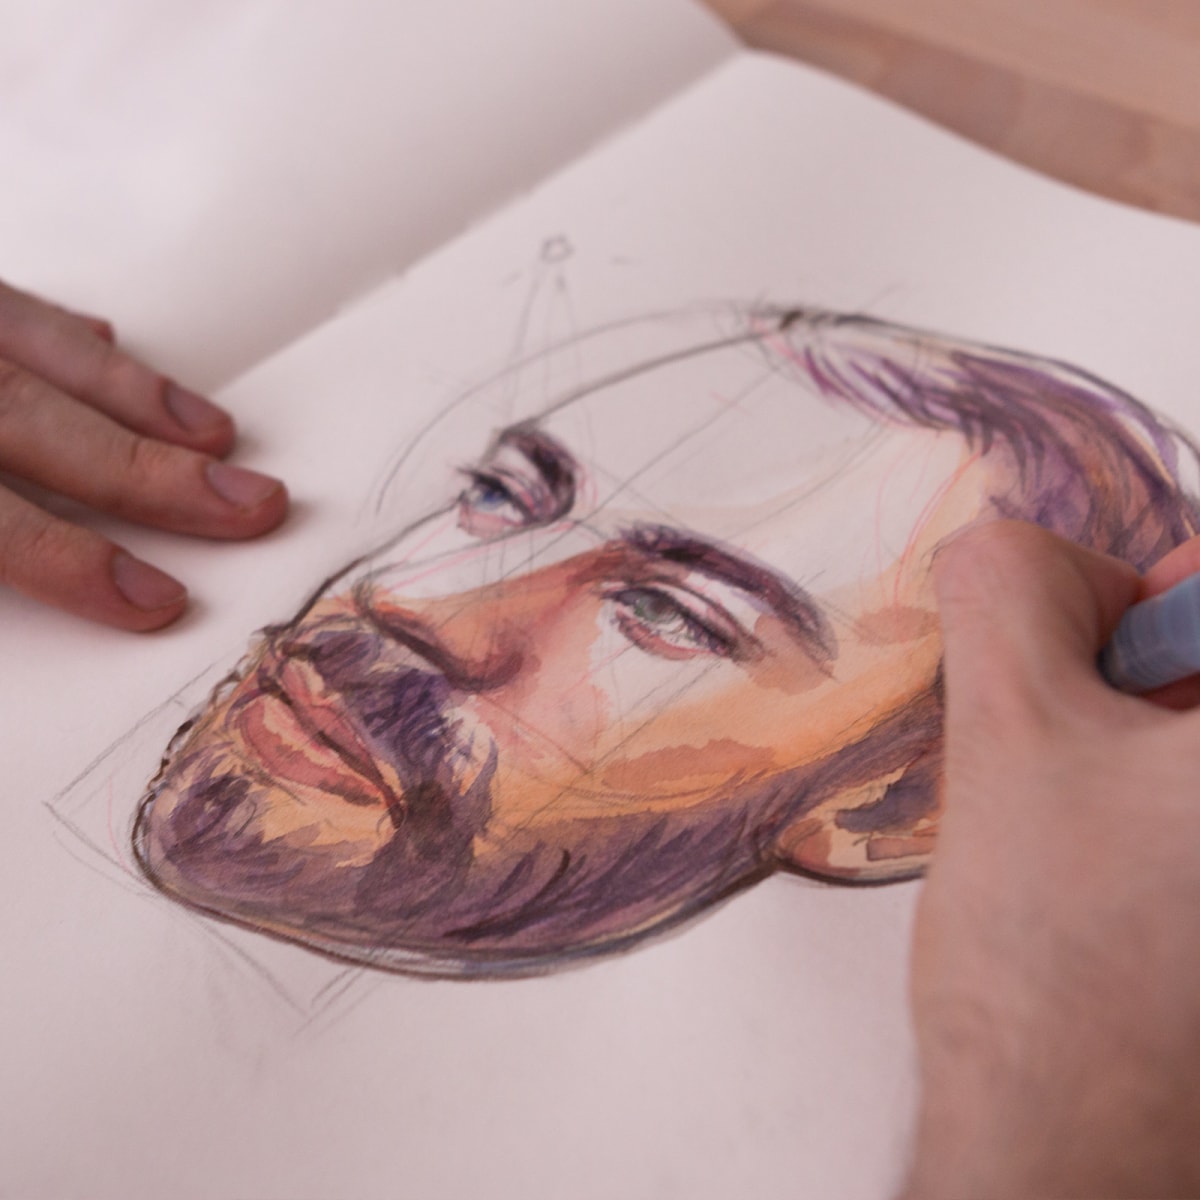 Cómo dibujar rostros y expresiones: 8 tutoriales gratis | Domestika